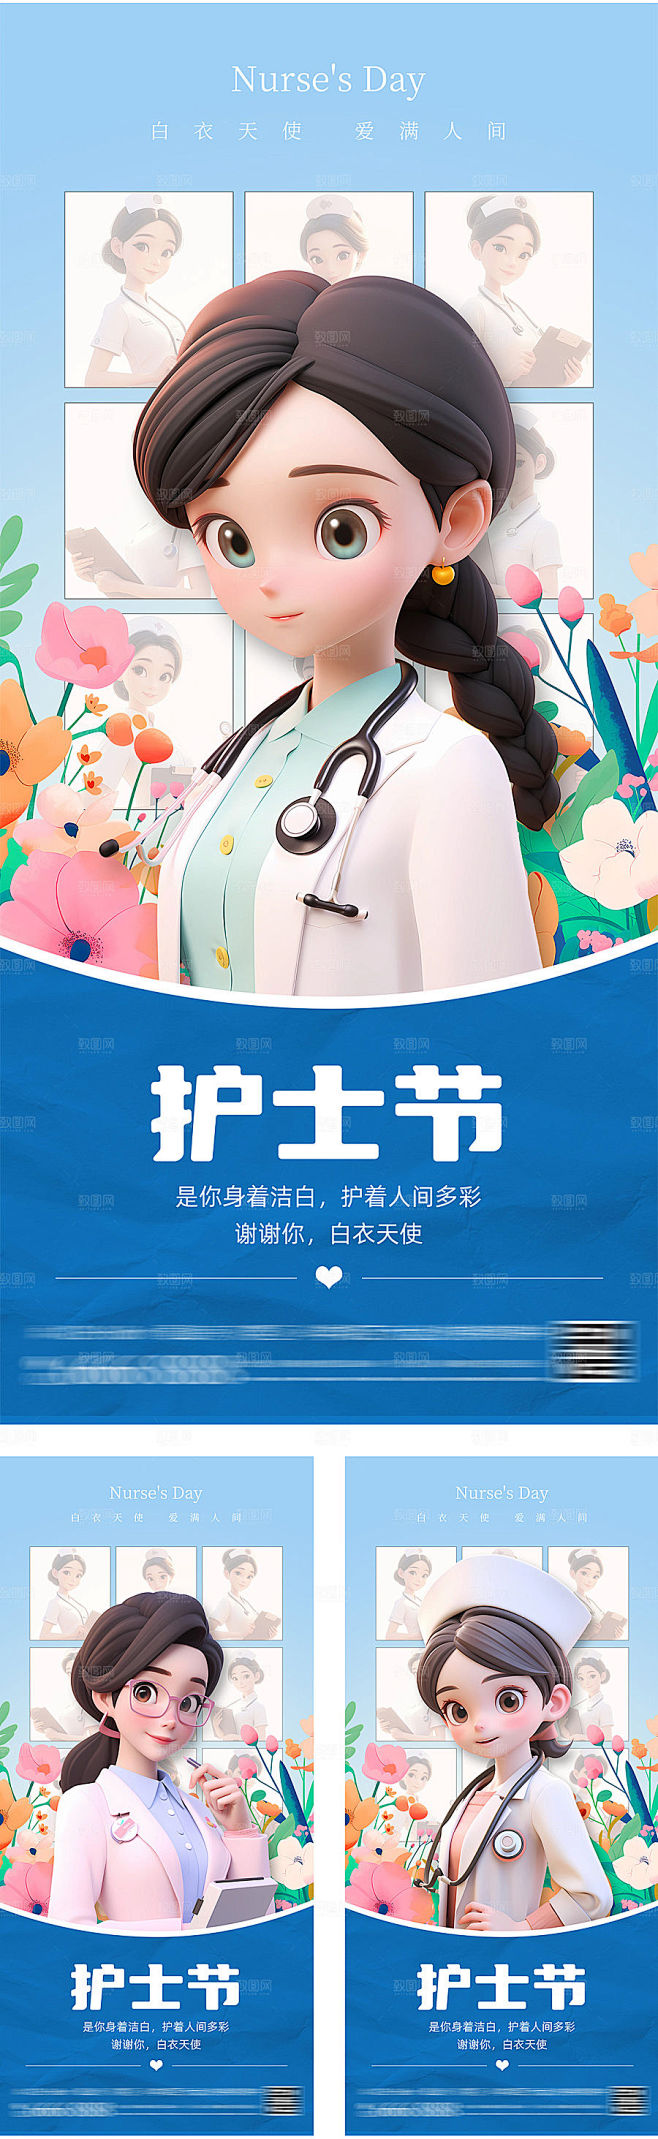 3D立体护士人物感恩护士节海报
